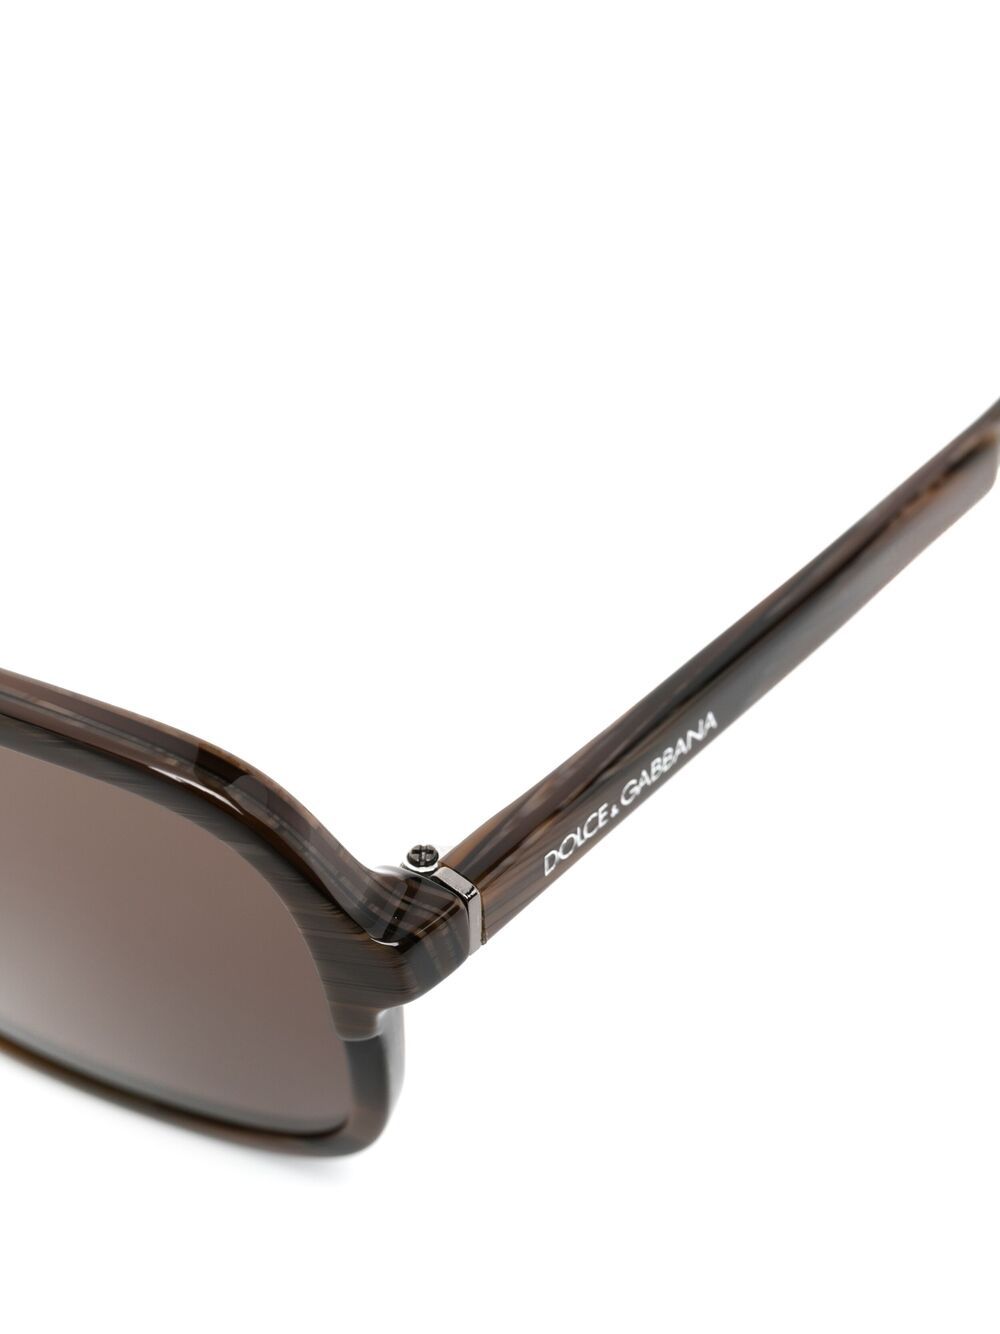 фото Dolce & gabbana eyewear солнцезащитные очки-авиаторы